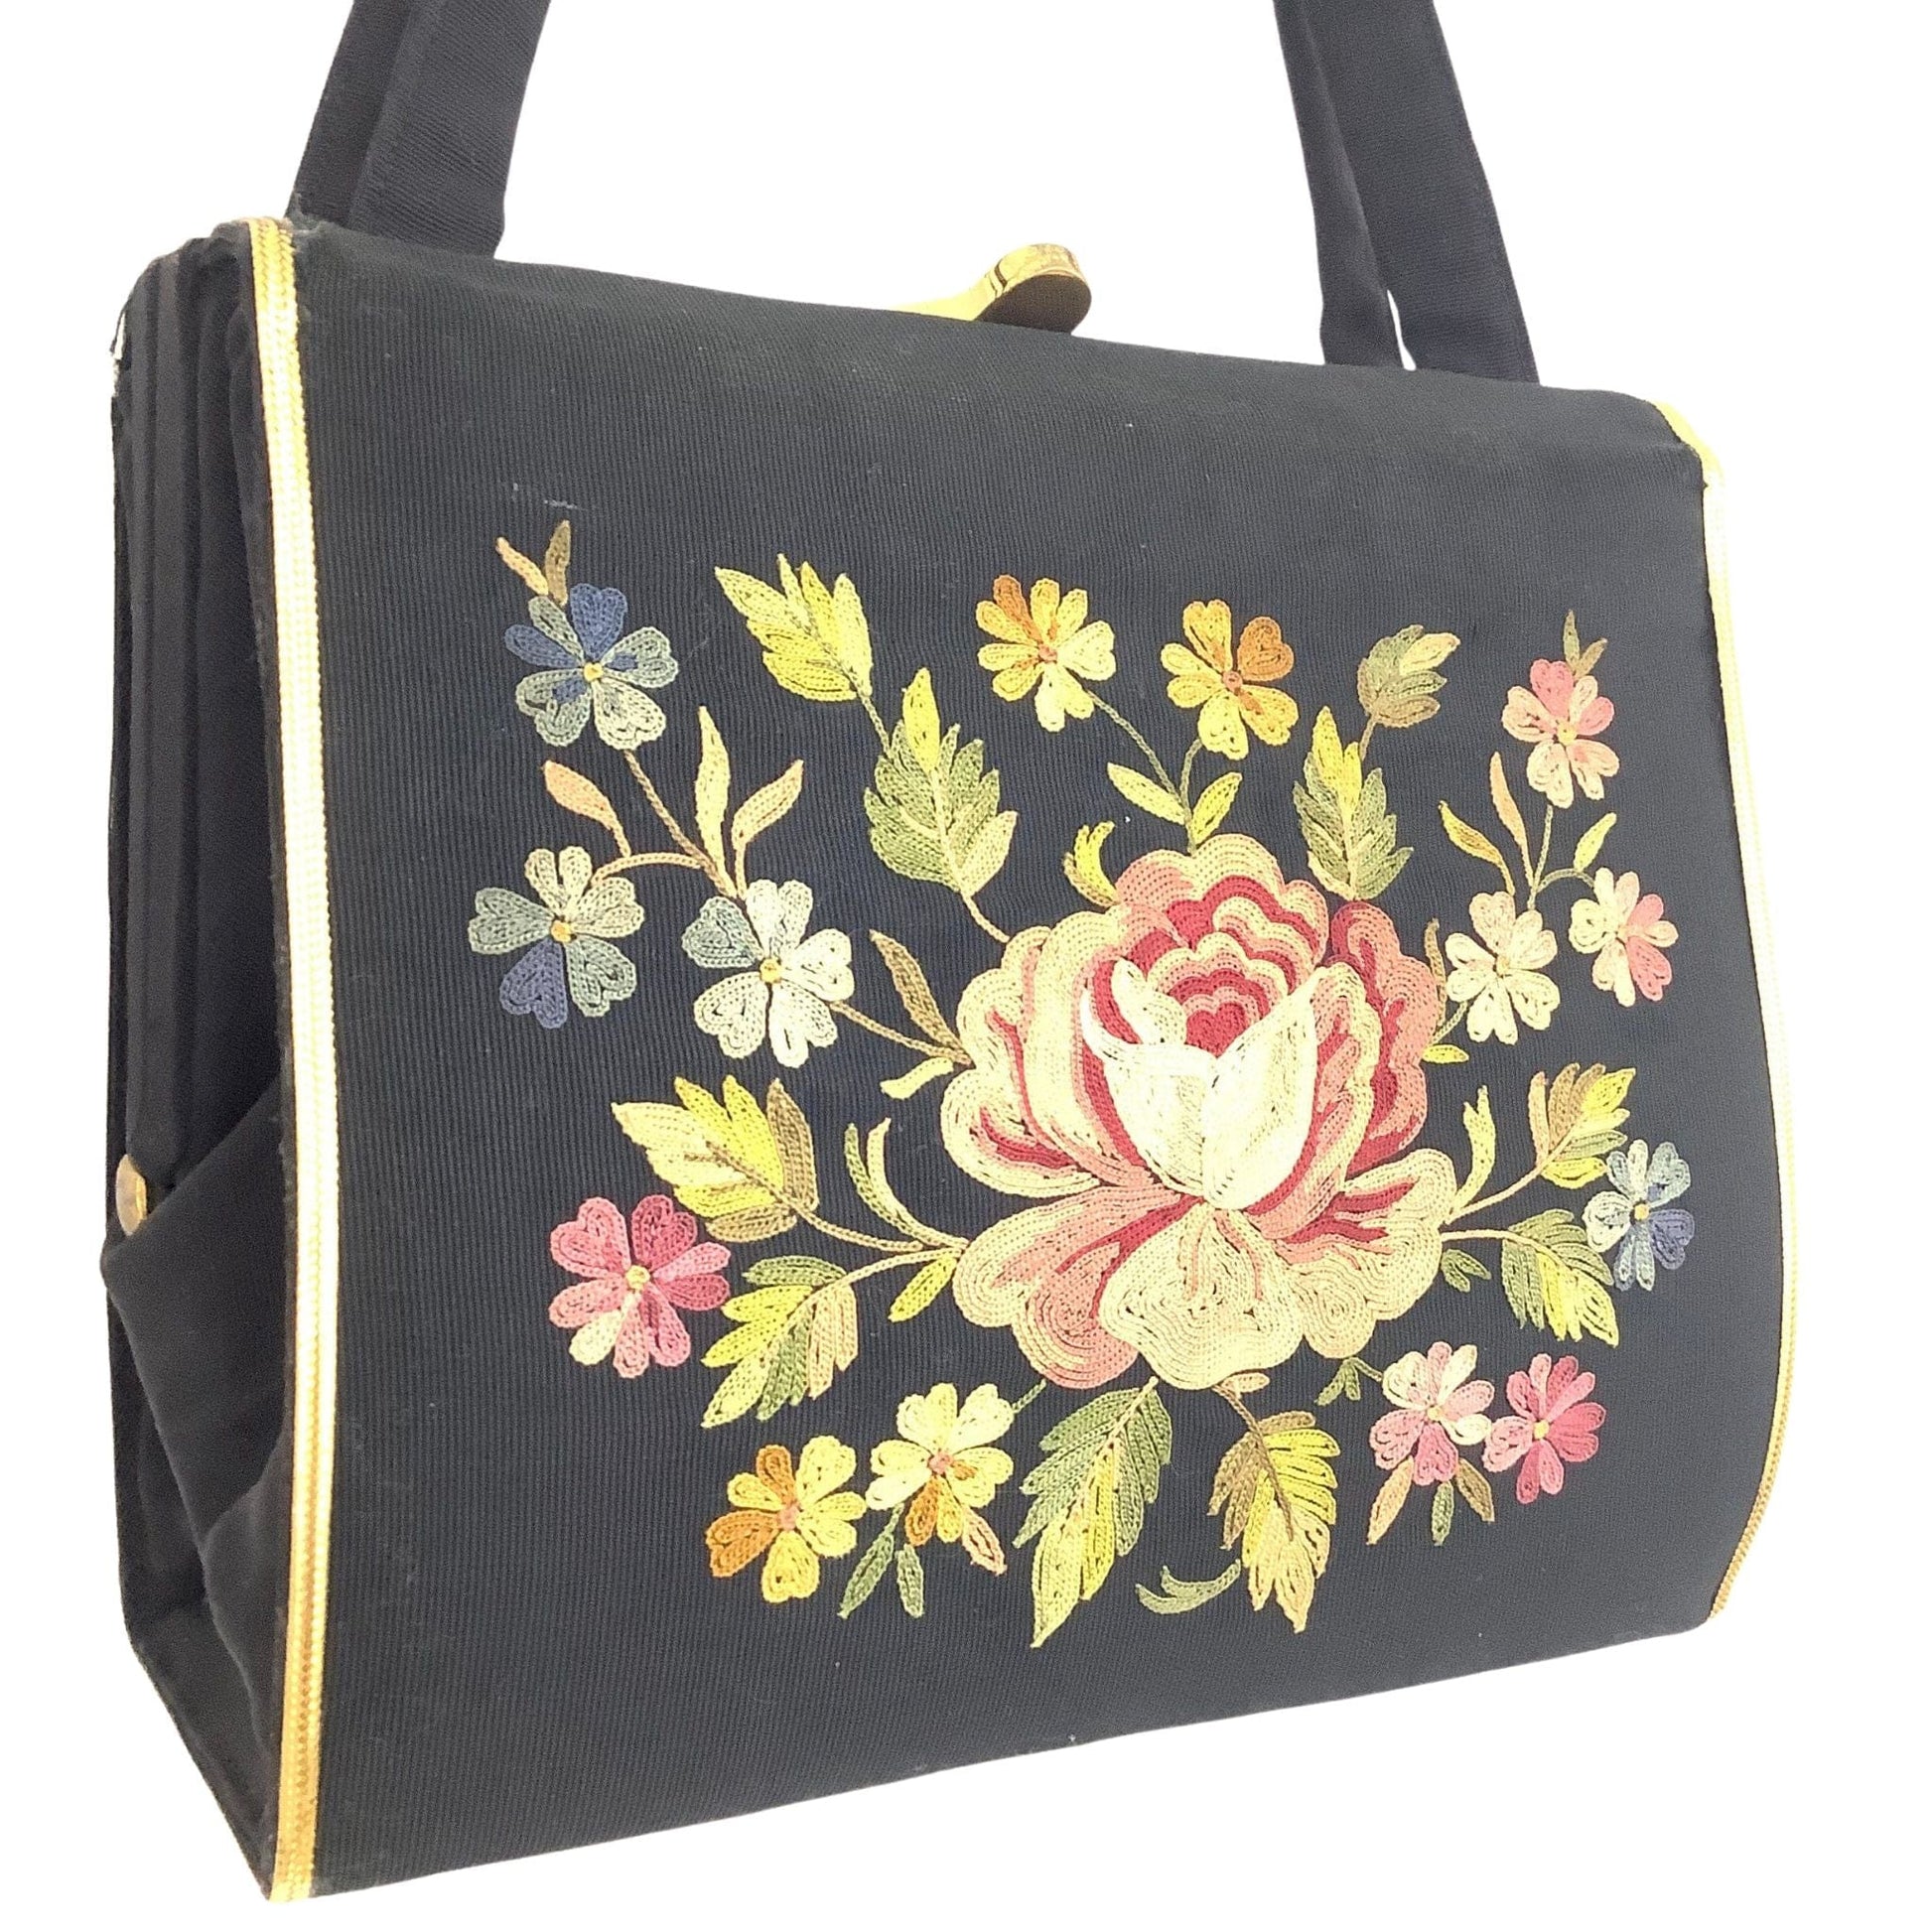 VTG Embroidered Pichel Bag Black / Textile / Vintage 1950s